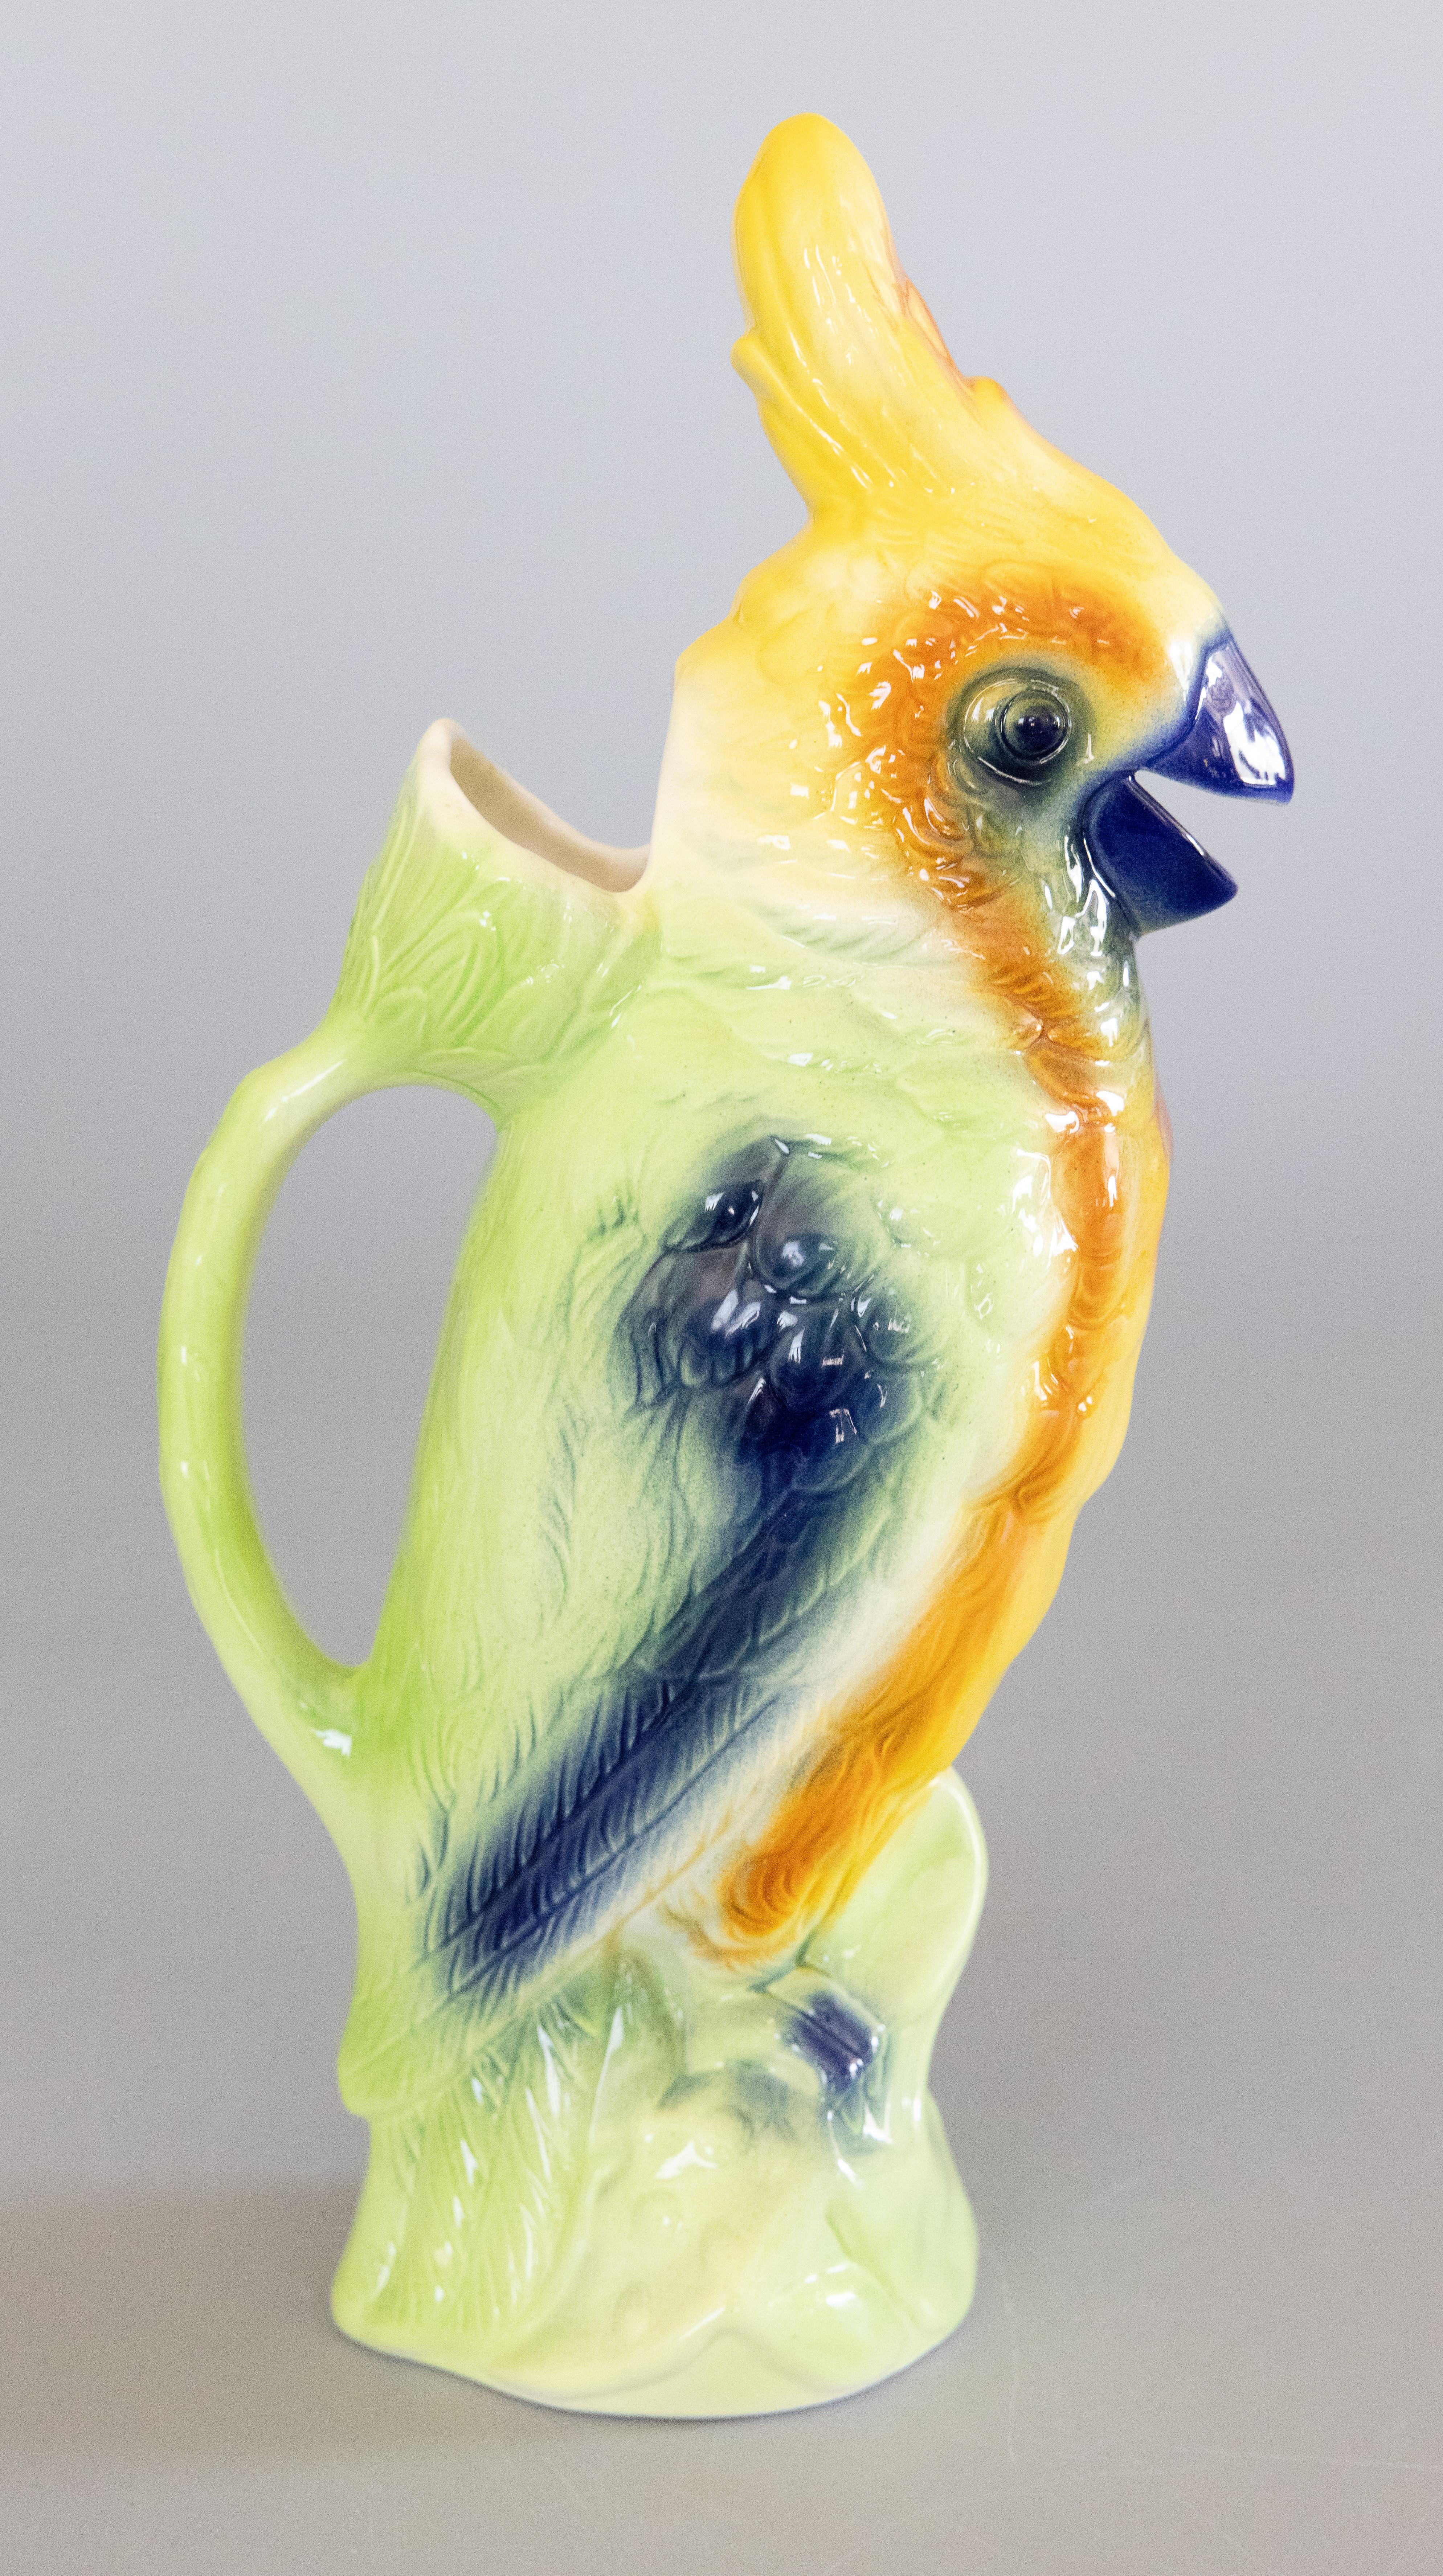 Eine herrliche Vintage Französisch Majolika Papagei Absinth Krug Dekanter oder figuralen Krug Hand mit schönen leuchtenden Farben gemalt, circa 1940-1950. Dieser Krug wurde in der Fayencefabrik St. Clement in Frankreich hergestellt und ist auf dem